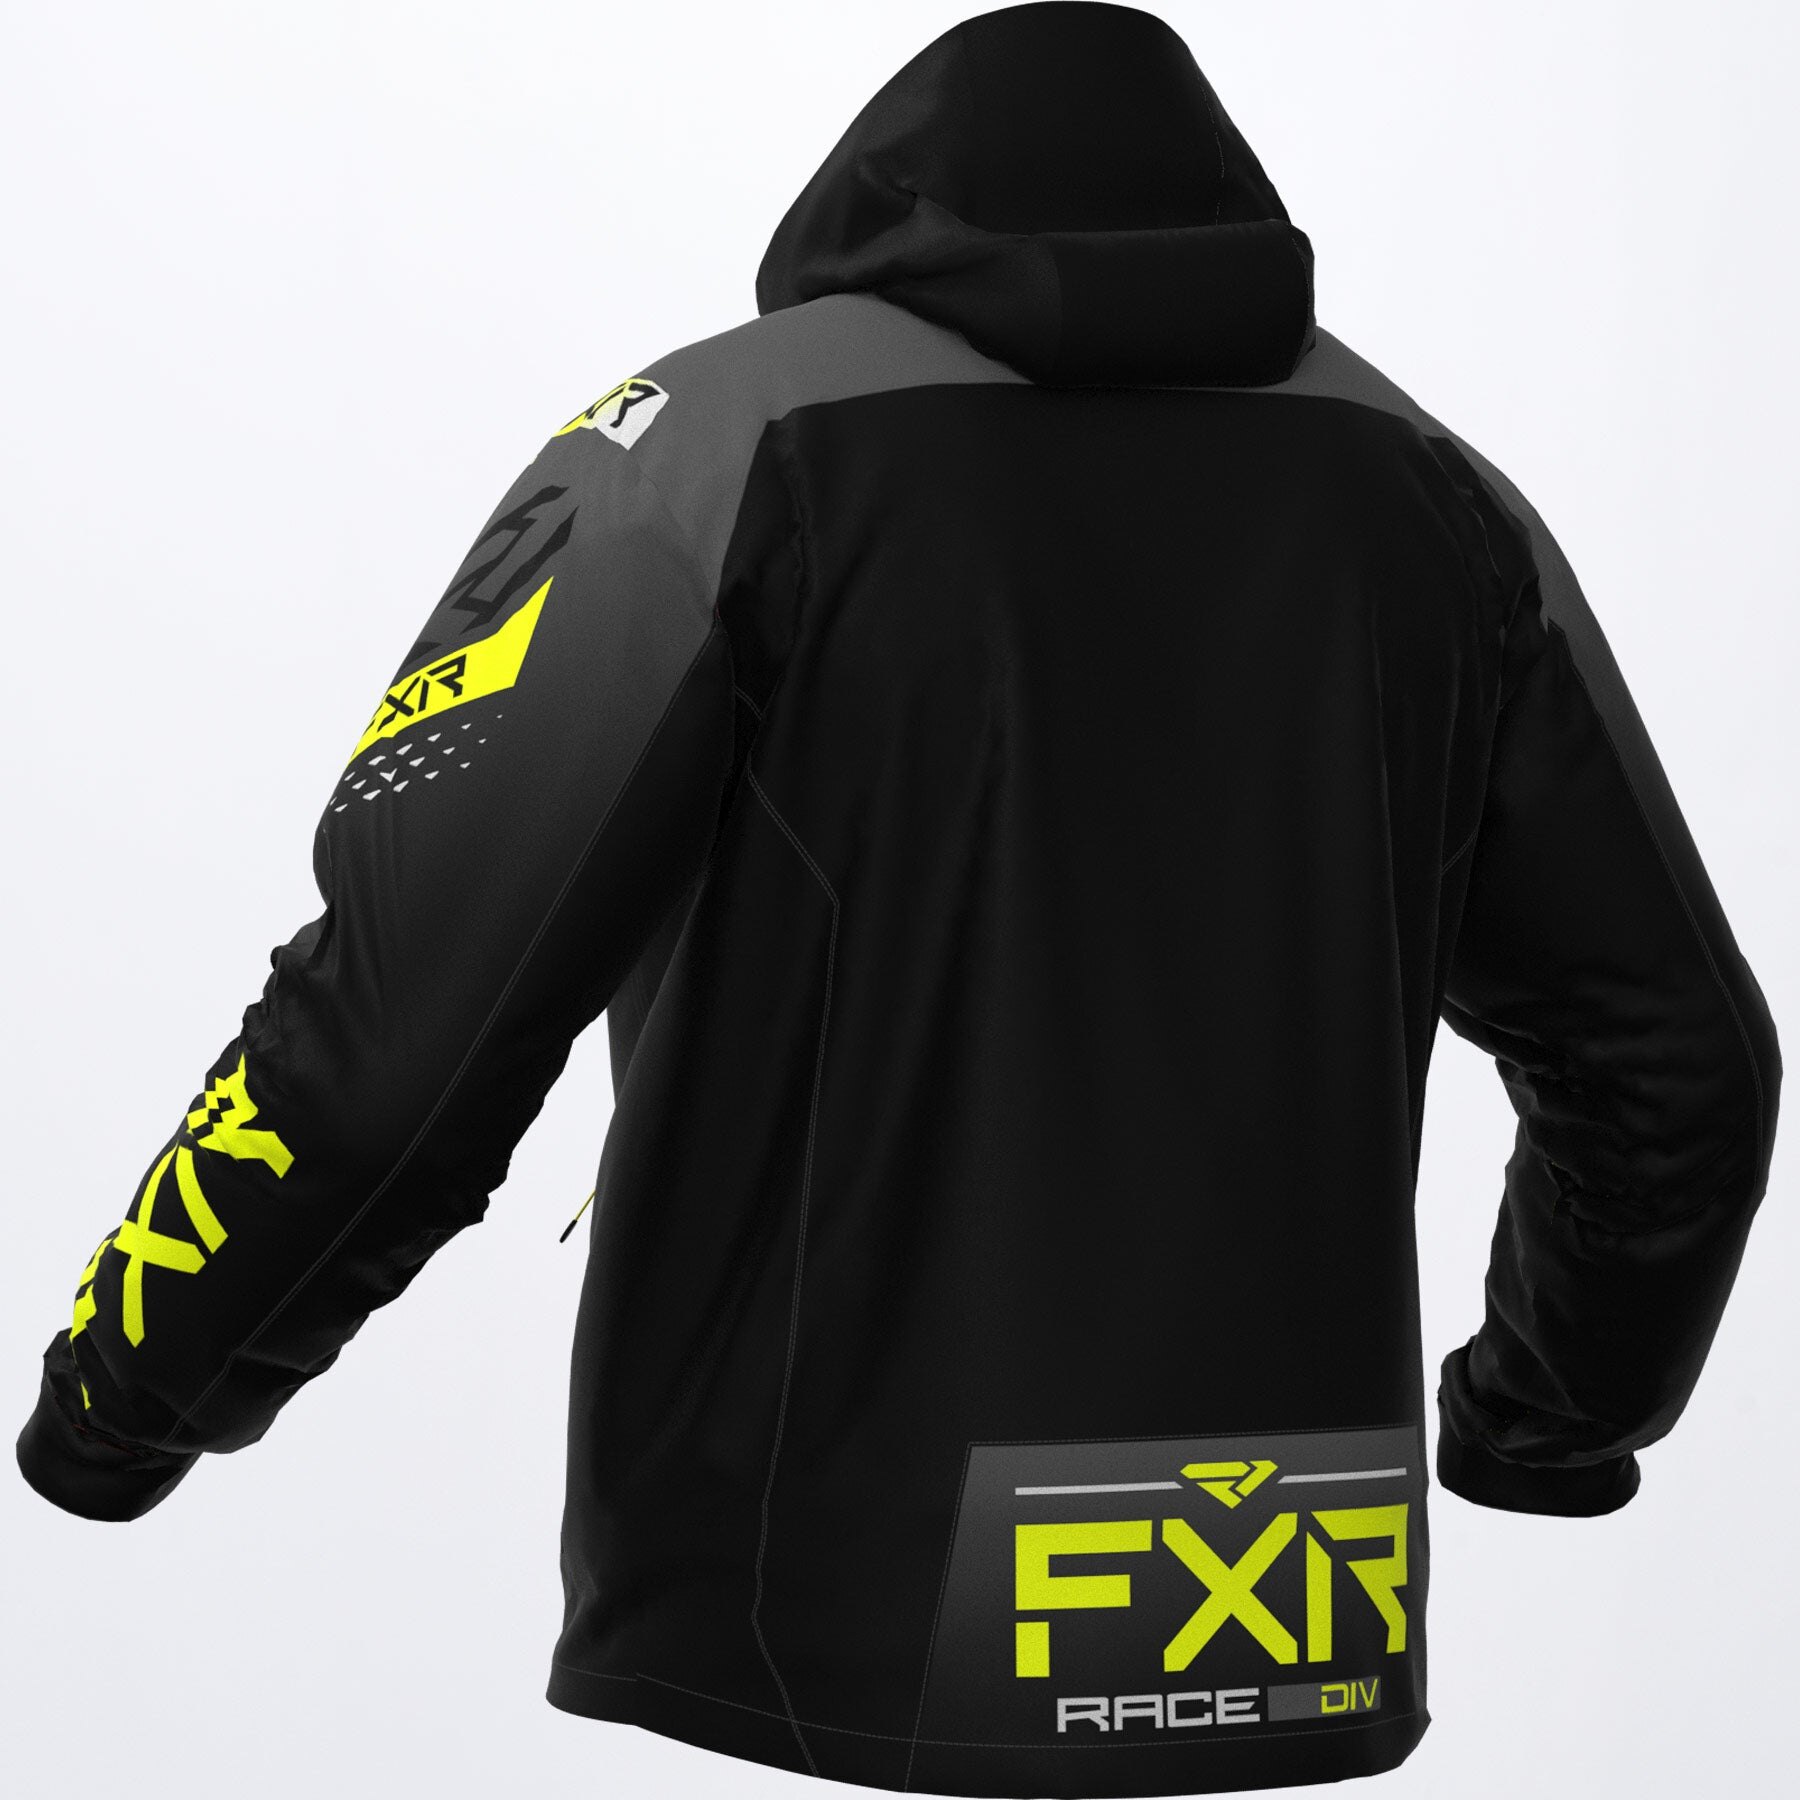 Men's RRX Jacket 2XL Black/Char/Hi Vis